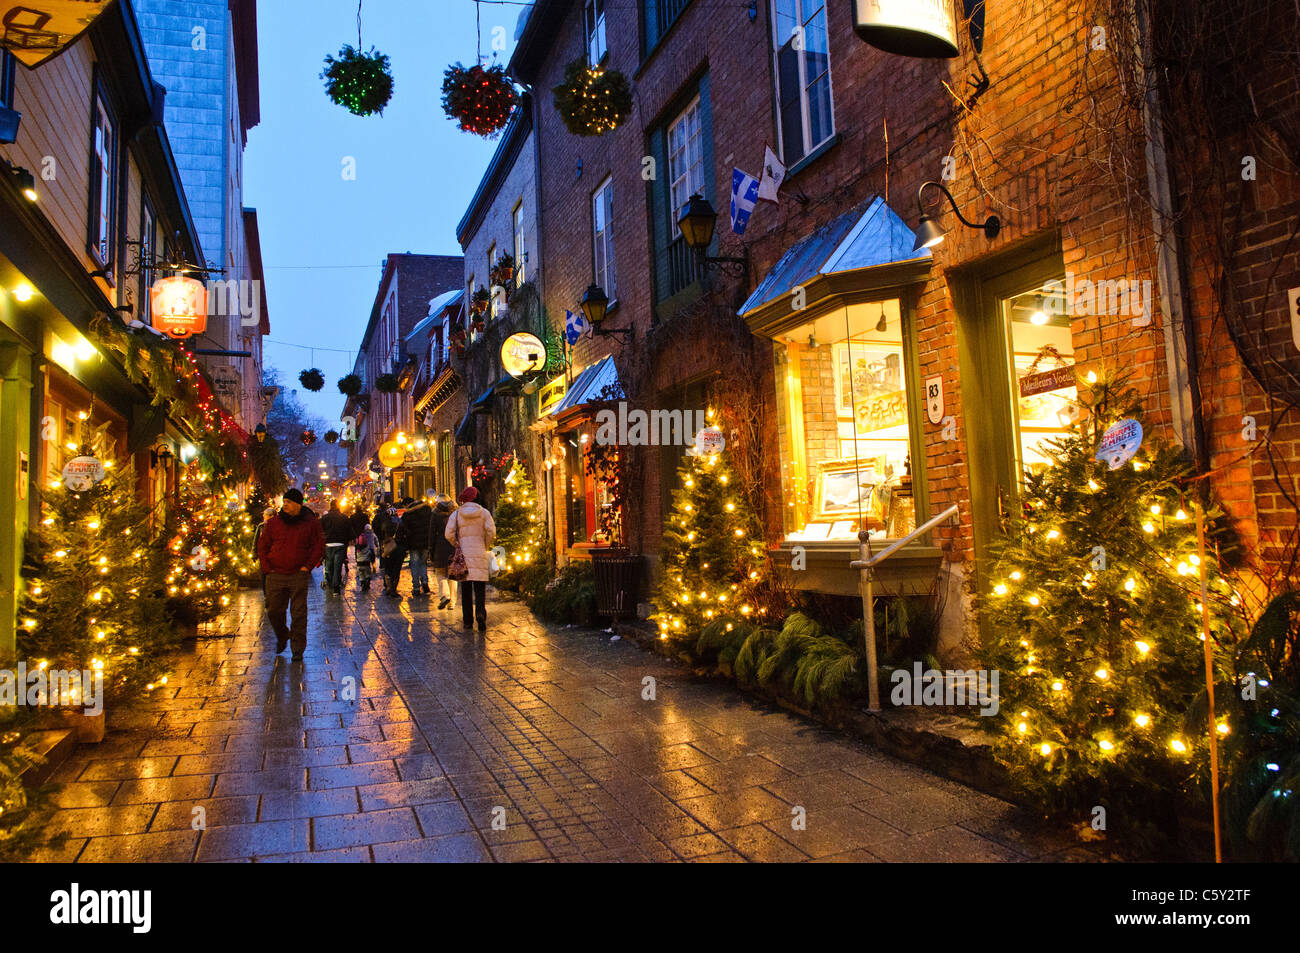 La città di Quebec, Canada - la pittoresca vecchia strada dello shopping di Rue du Petit-Champlain in Quebec Città Vecchia, decorato per il natale e prese a notte. Foto Stock